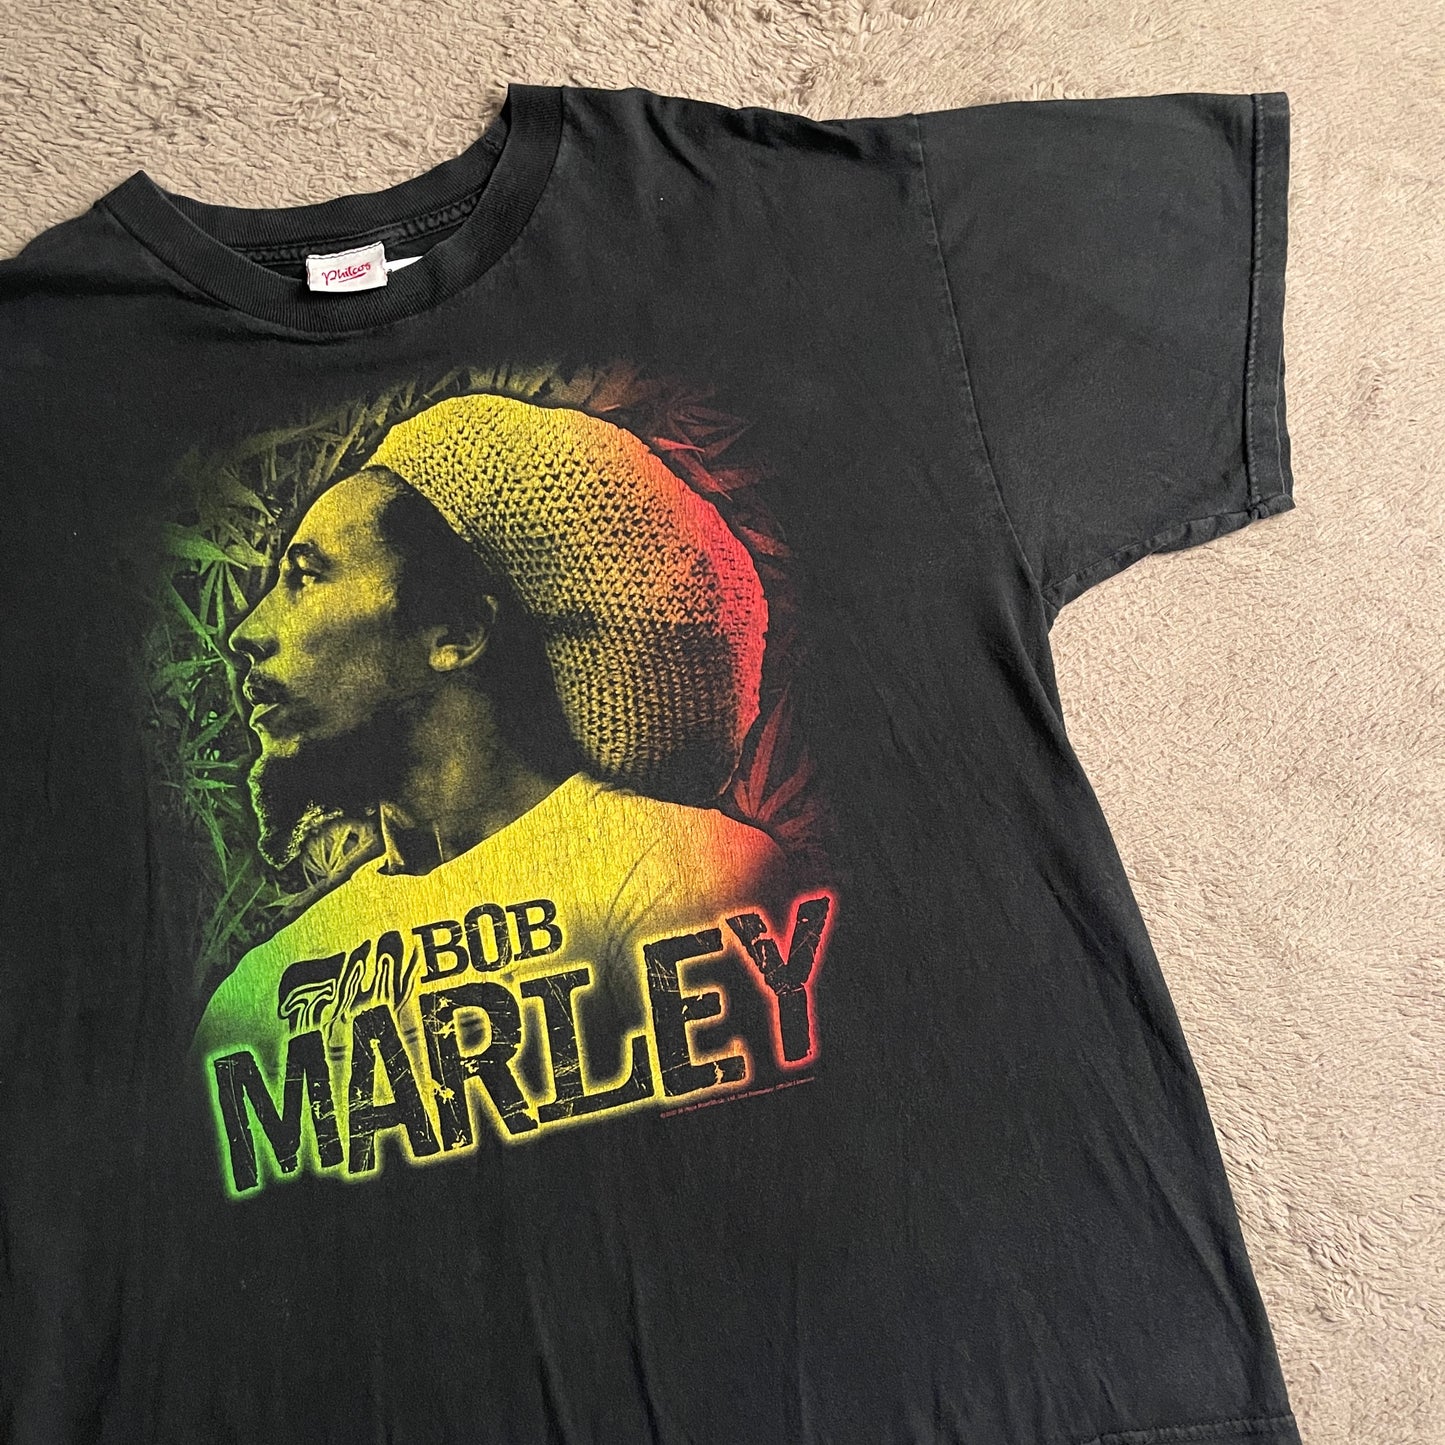 Bob Marley Tee (XL)